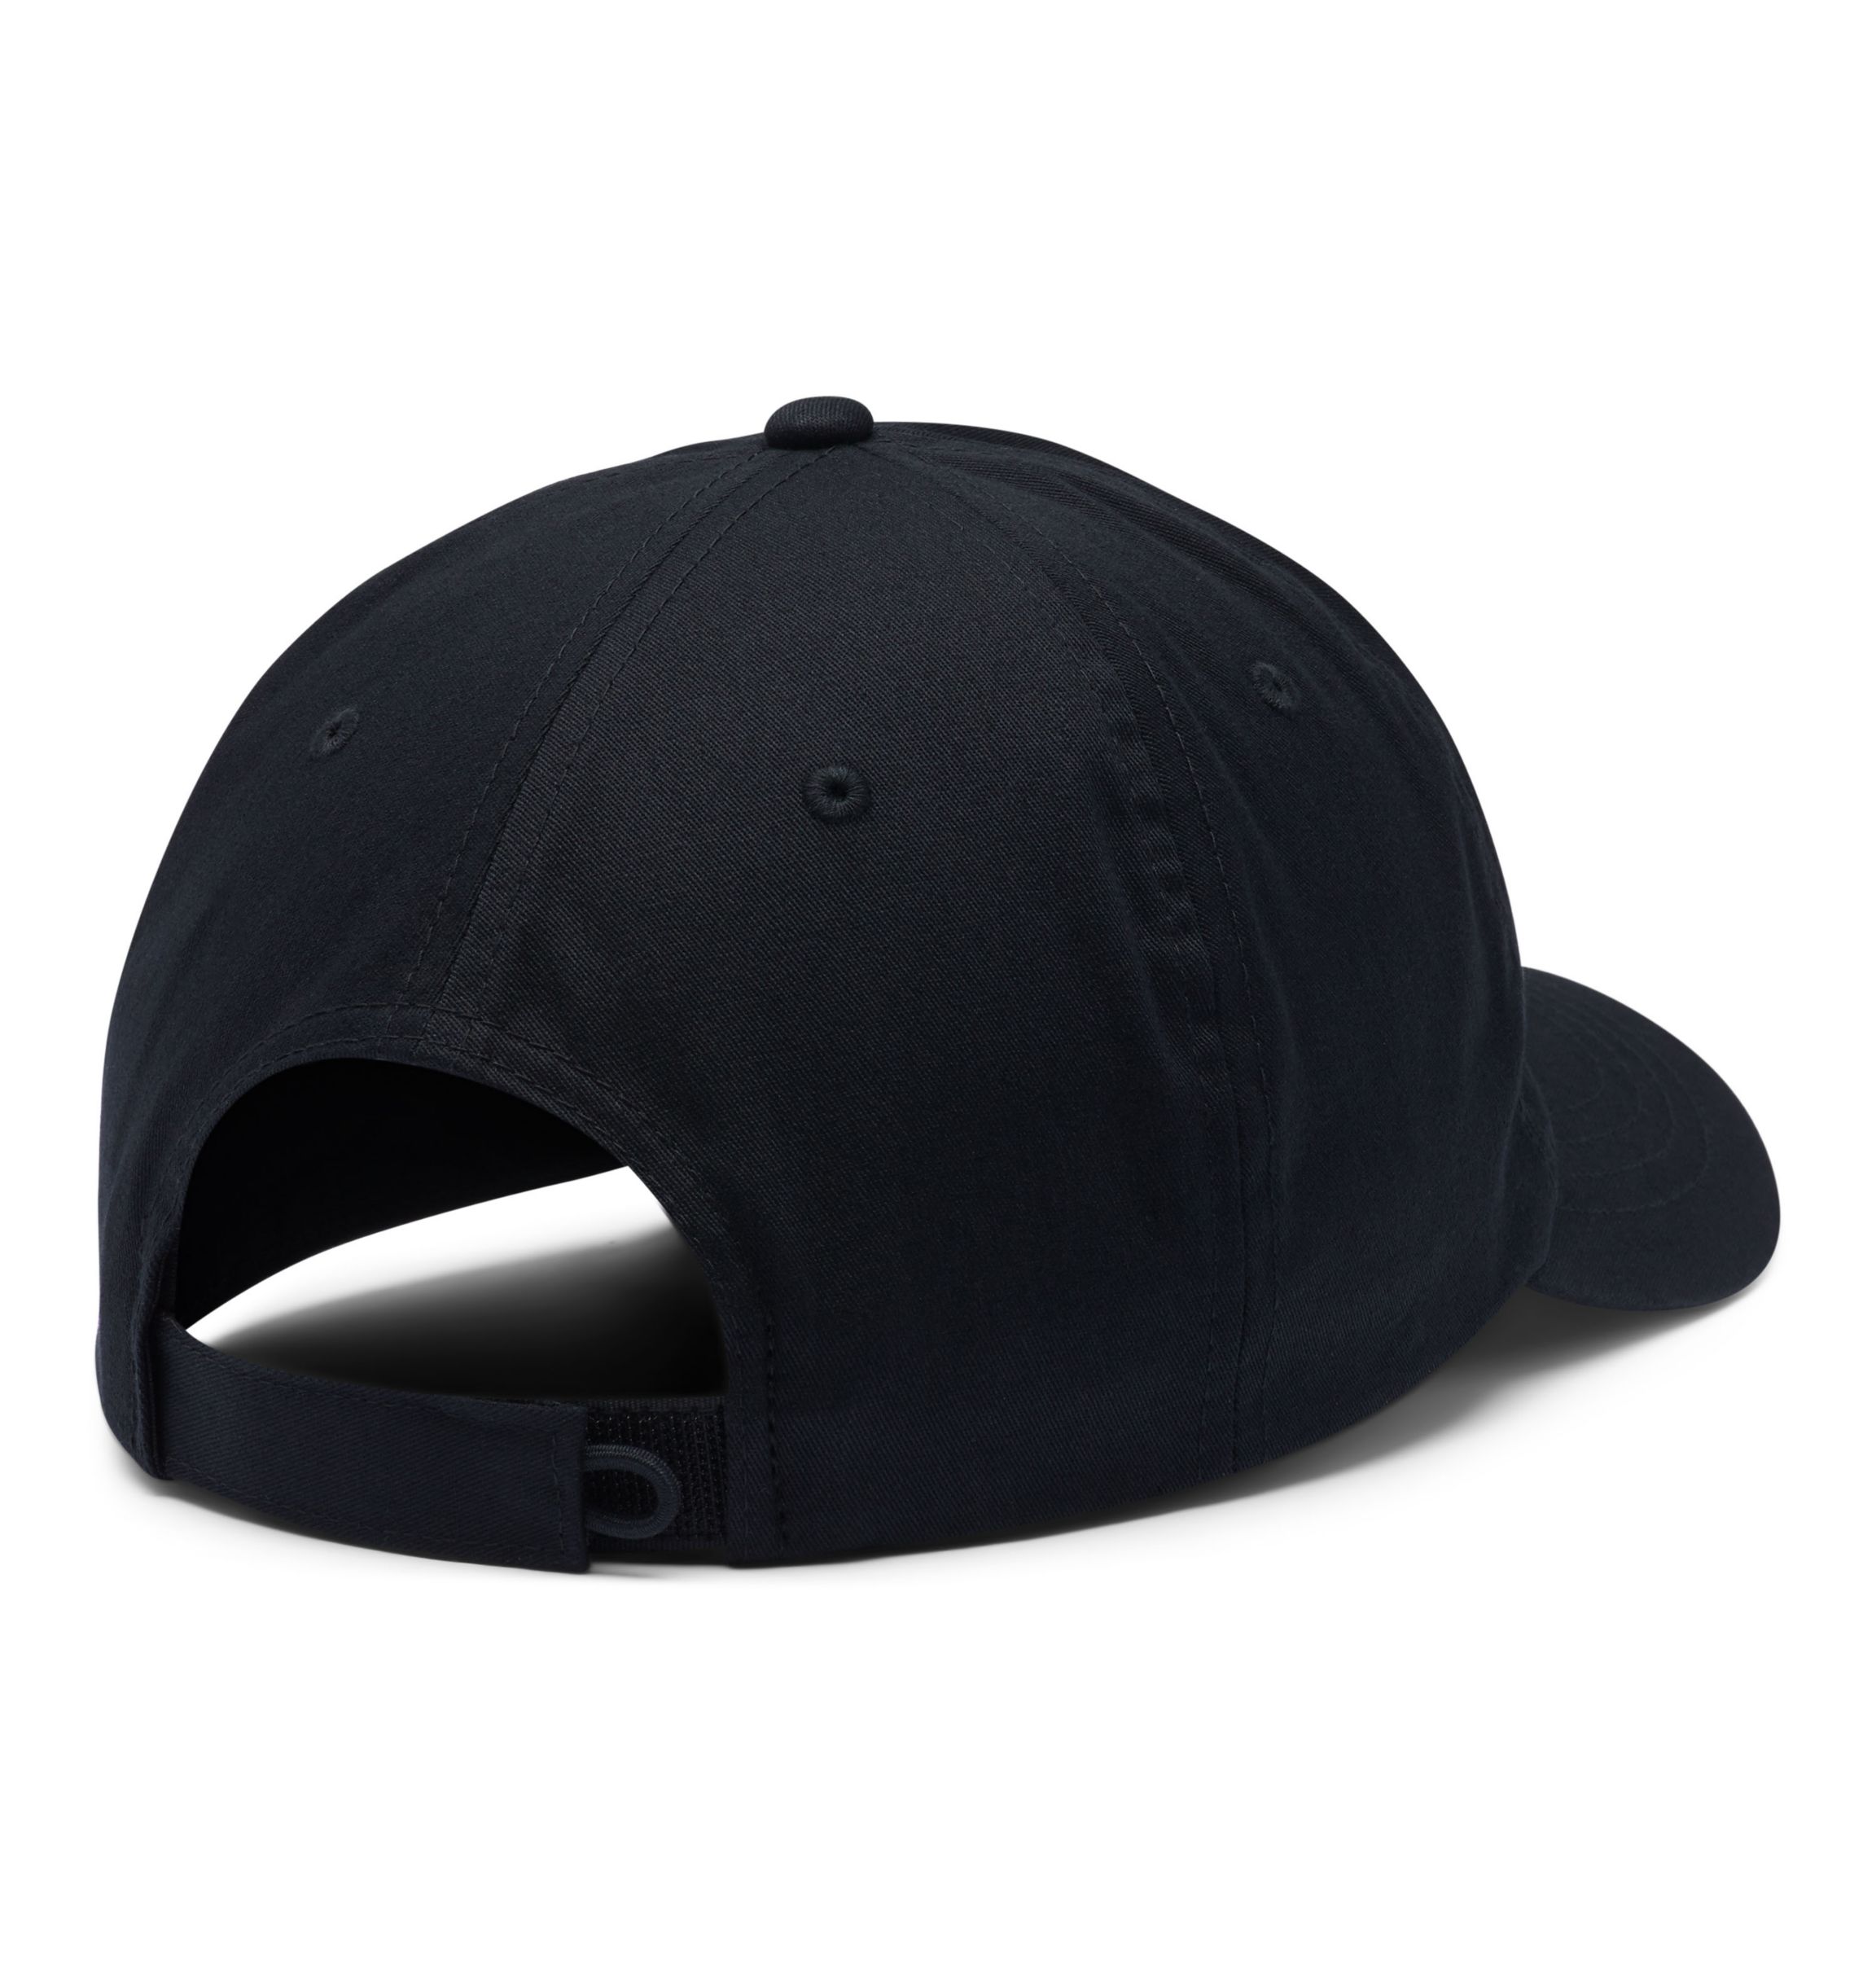 ROC™ II Ball Cap | Columbia Sportswear